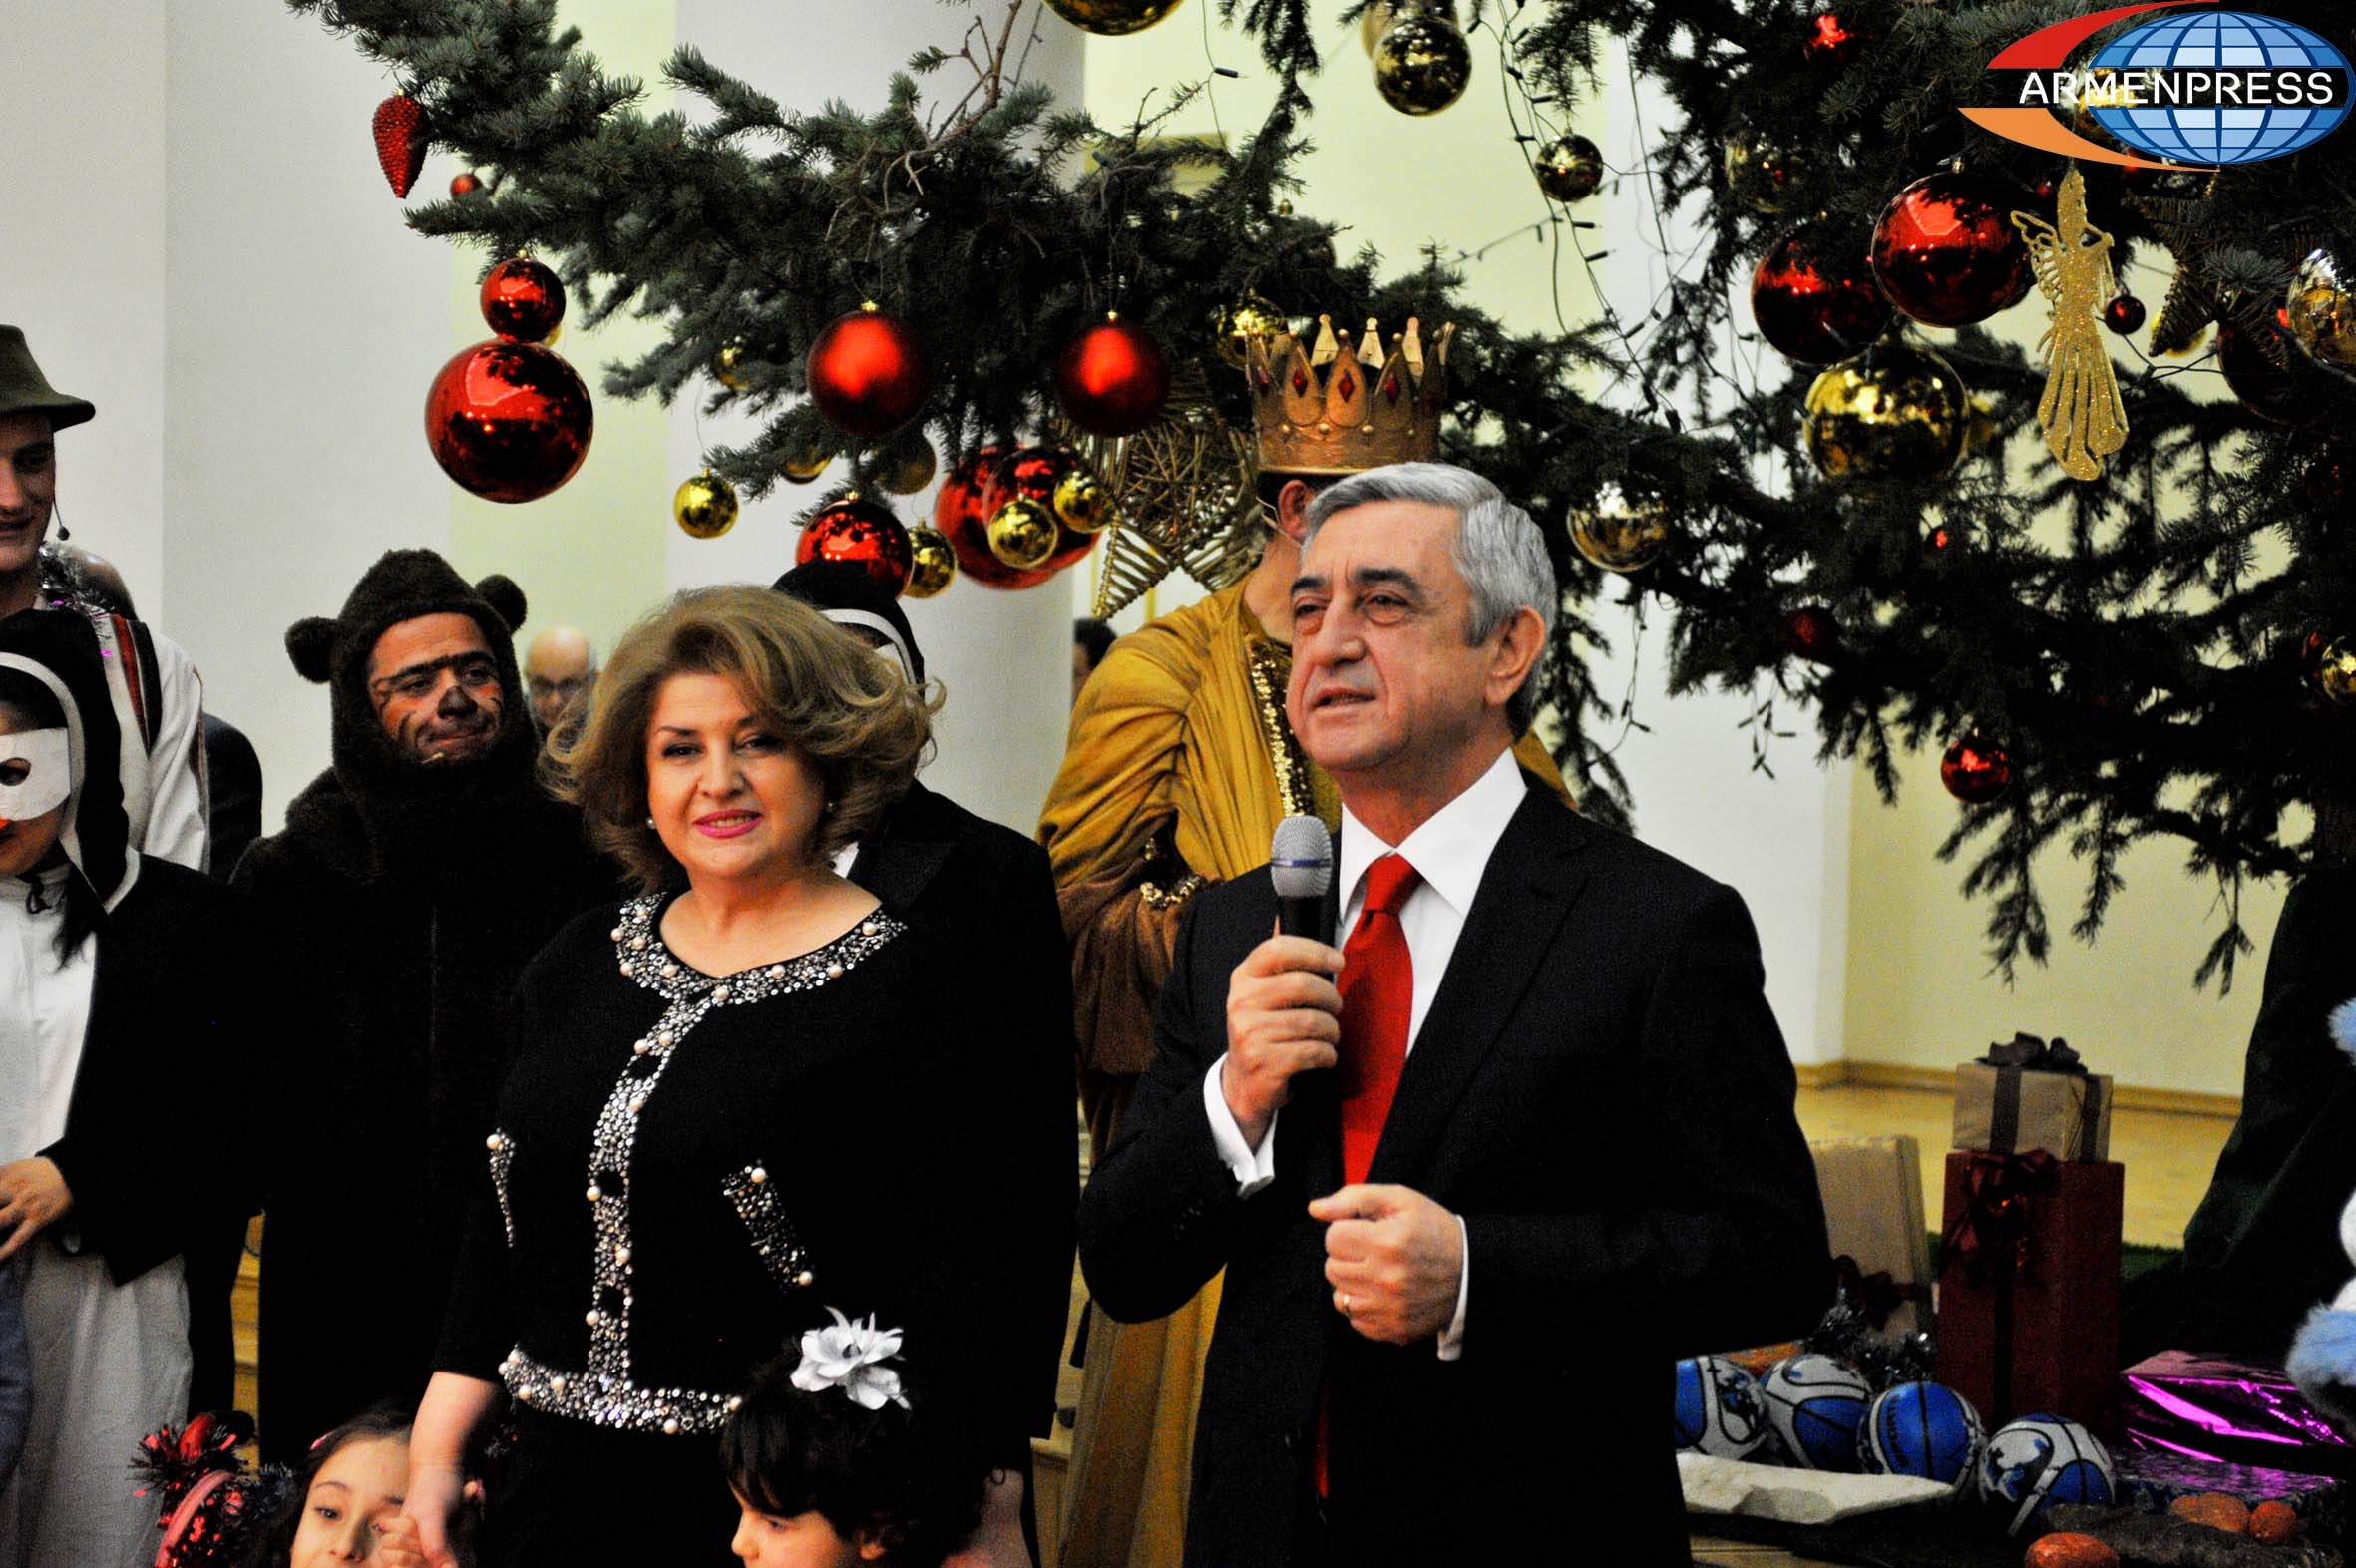 Armenia's President hosts children at Presidential Residence